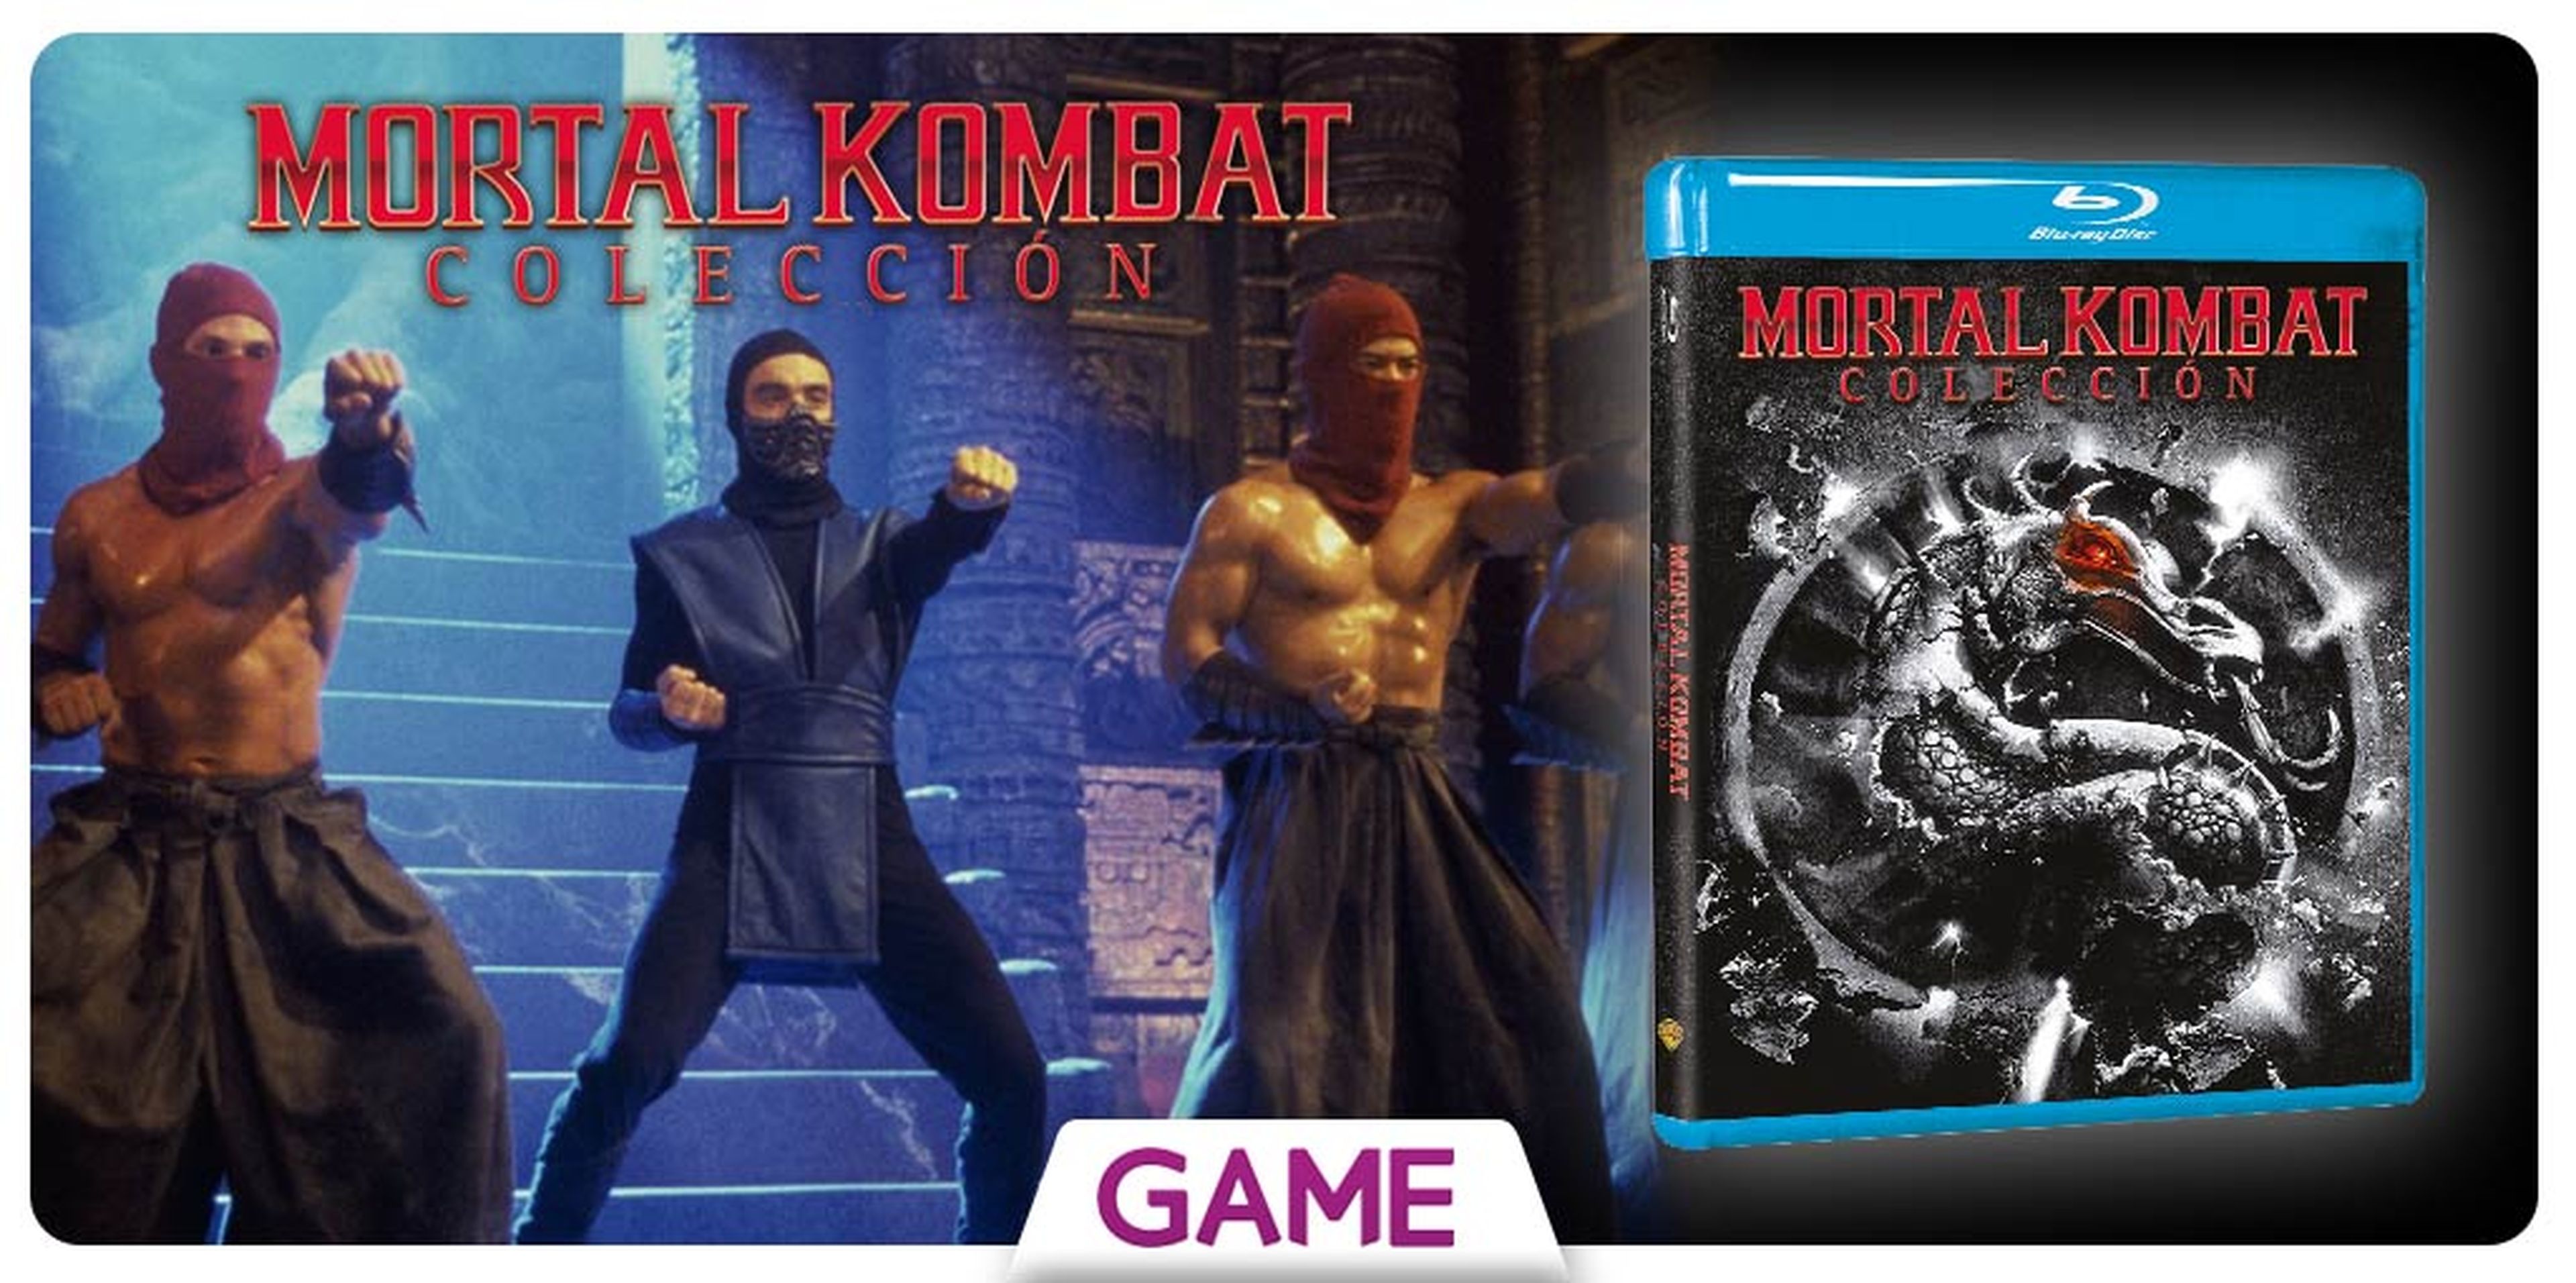 Mortal Kombat Collection - Blu-Ray disponible sólo en GAME